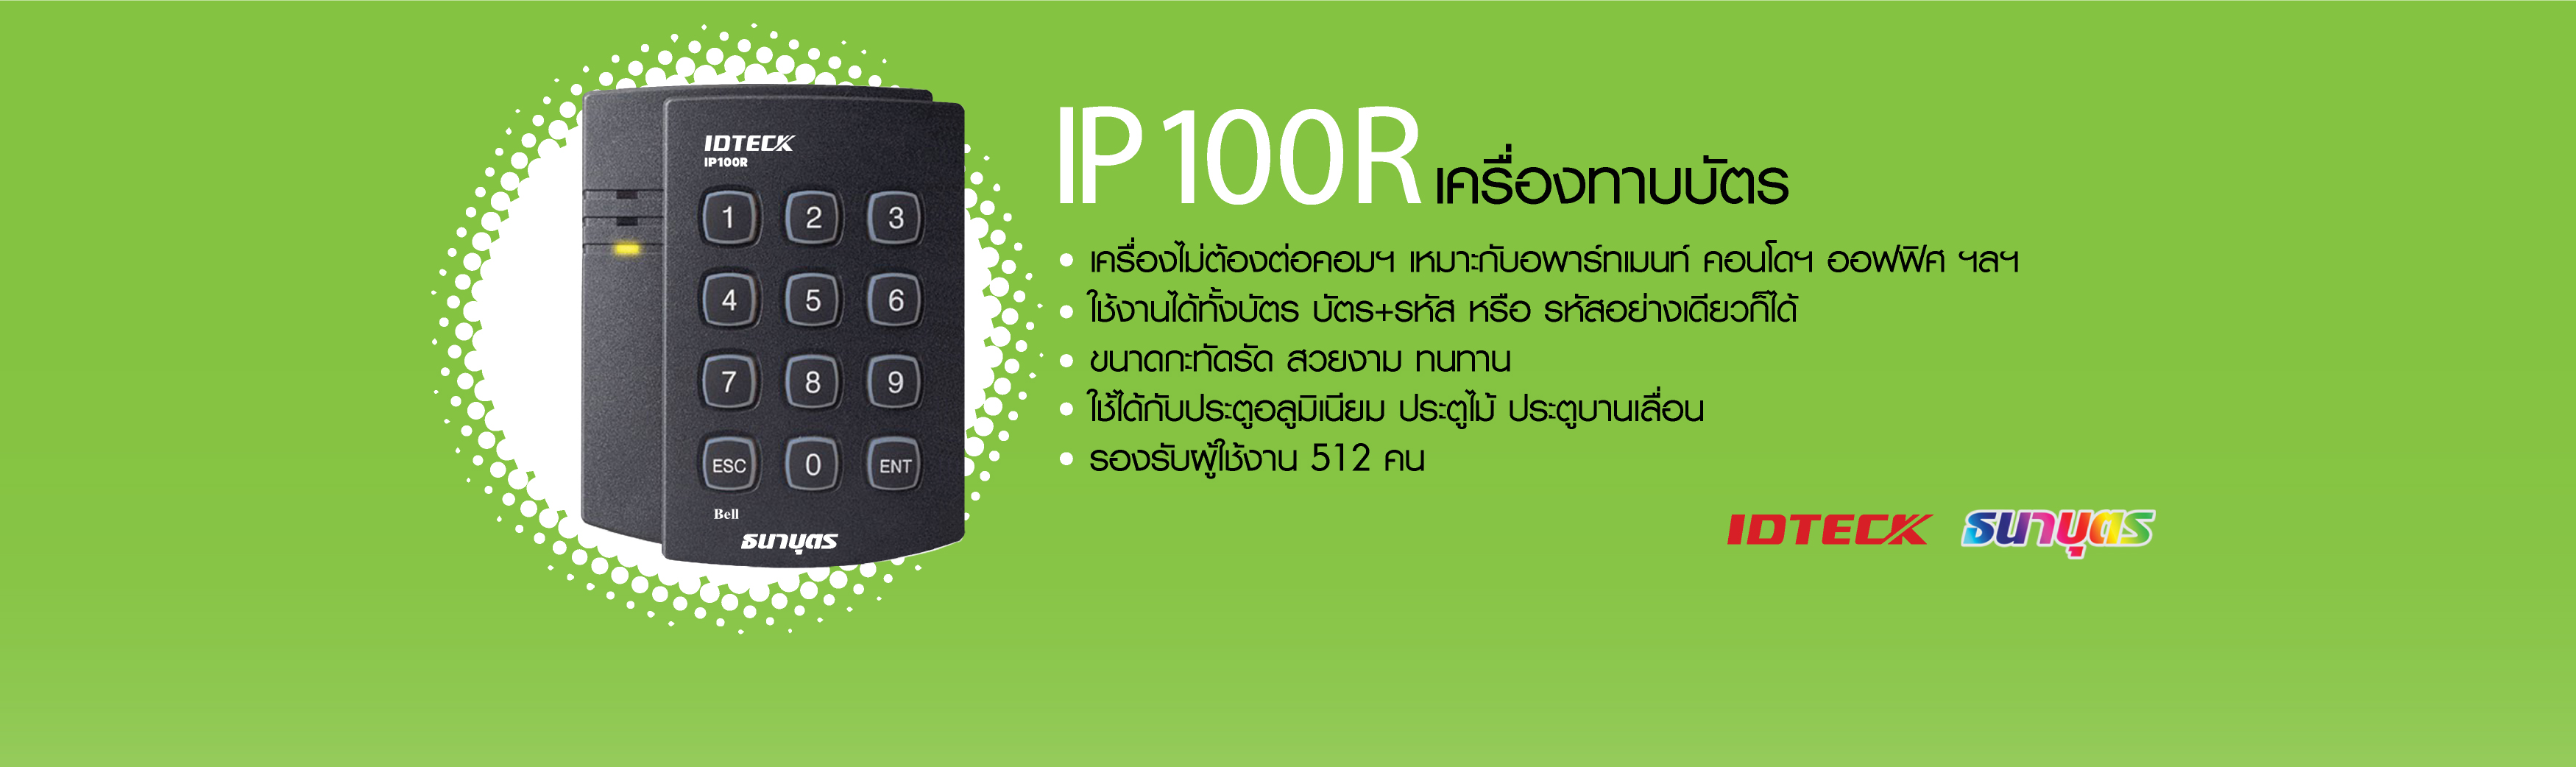 IP100R